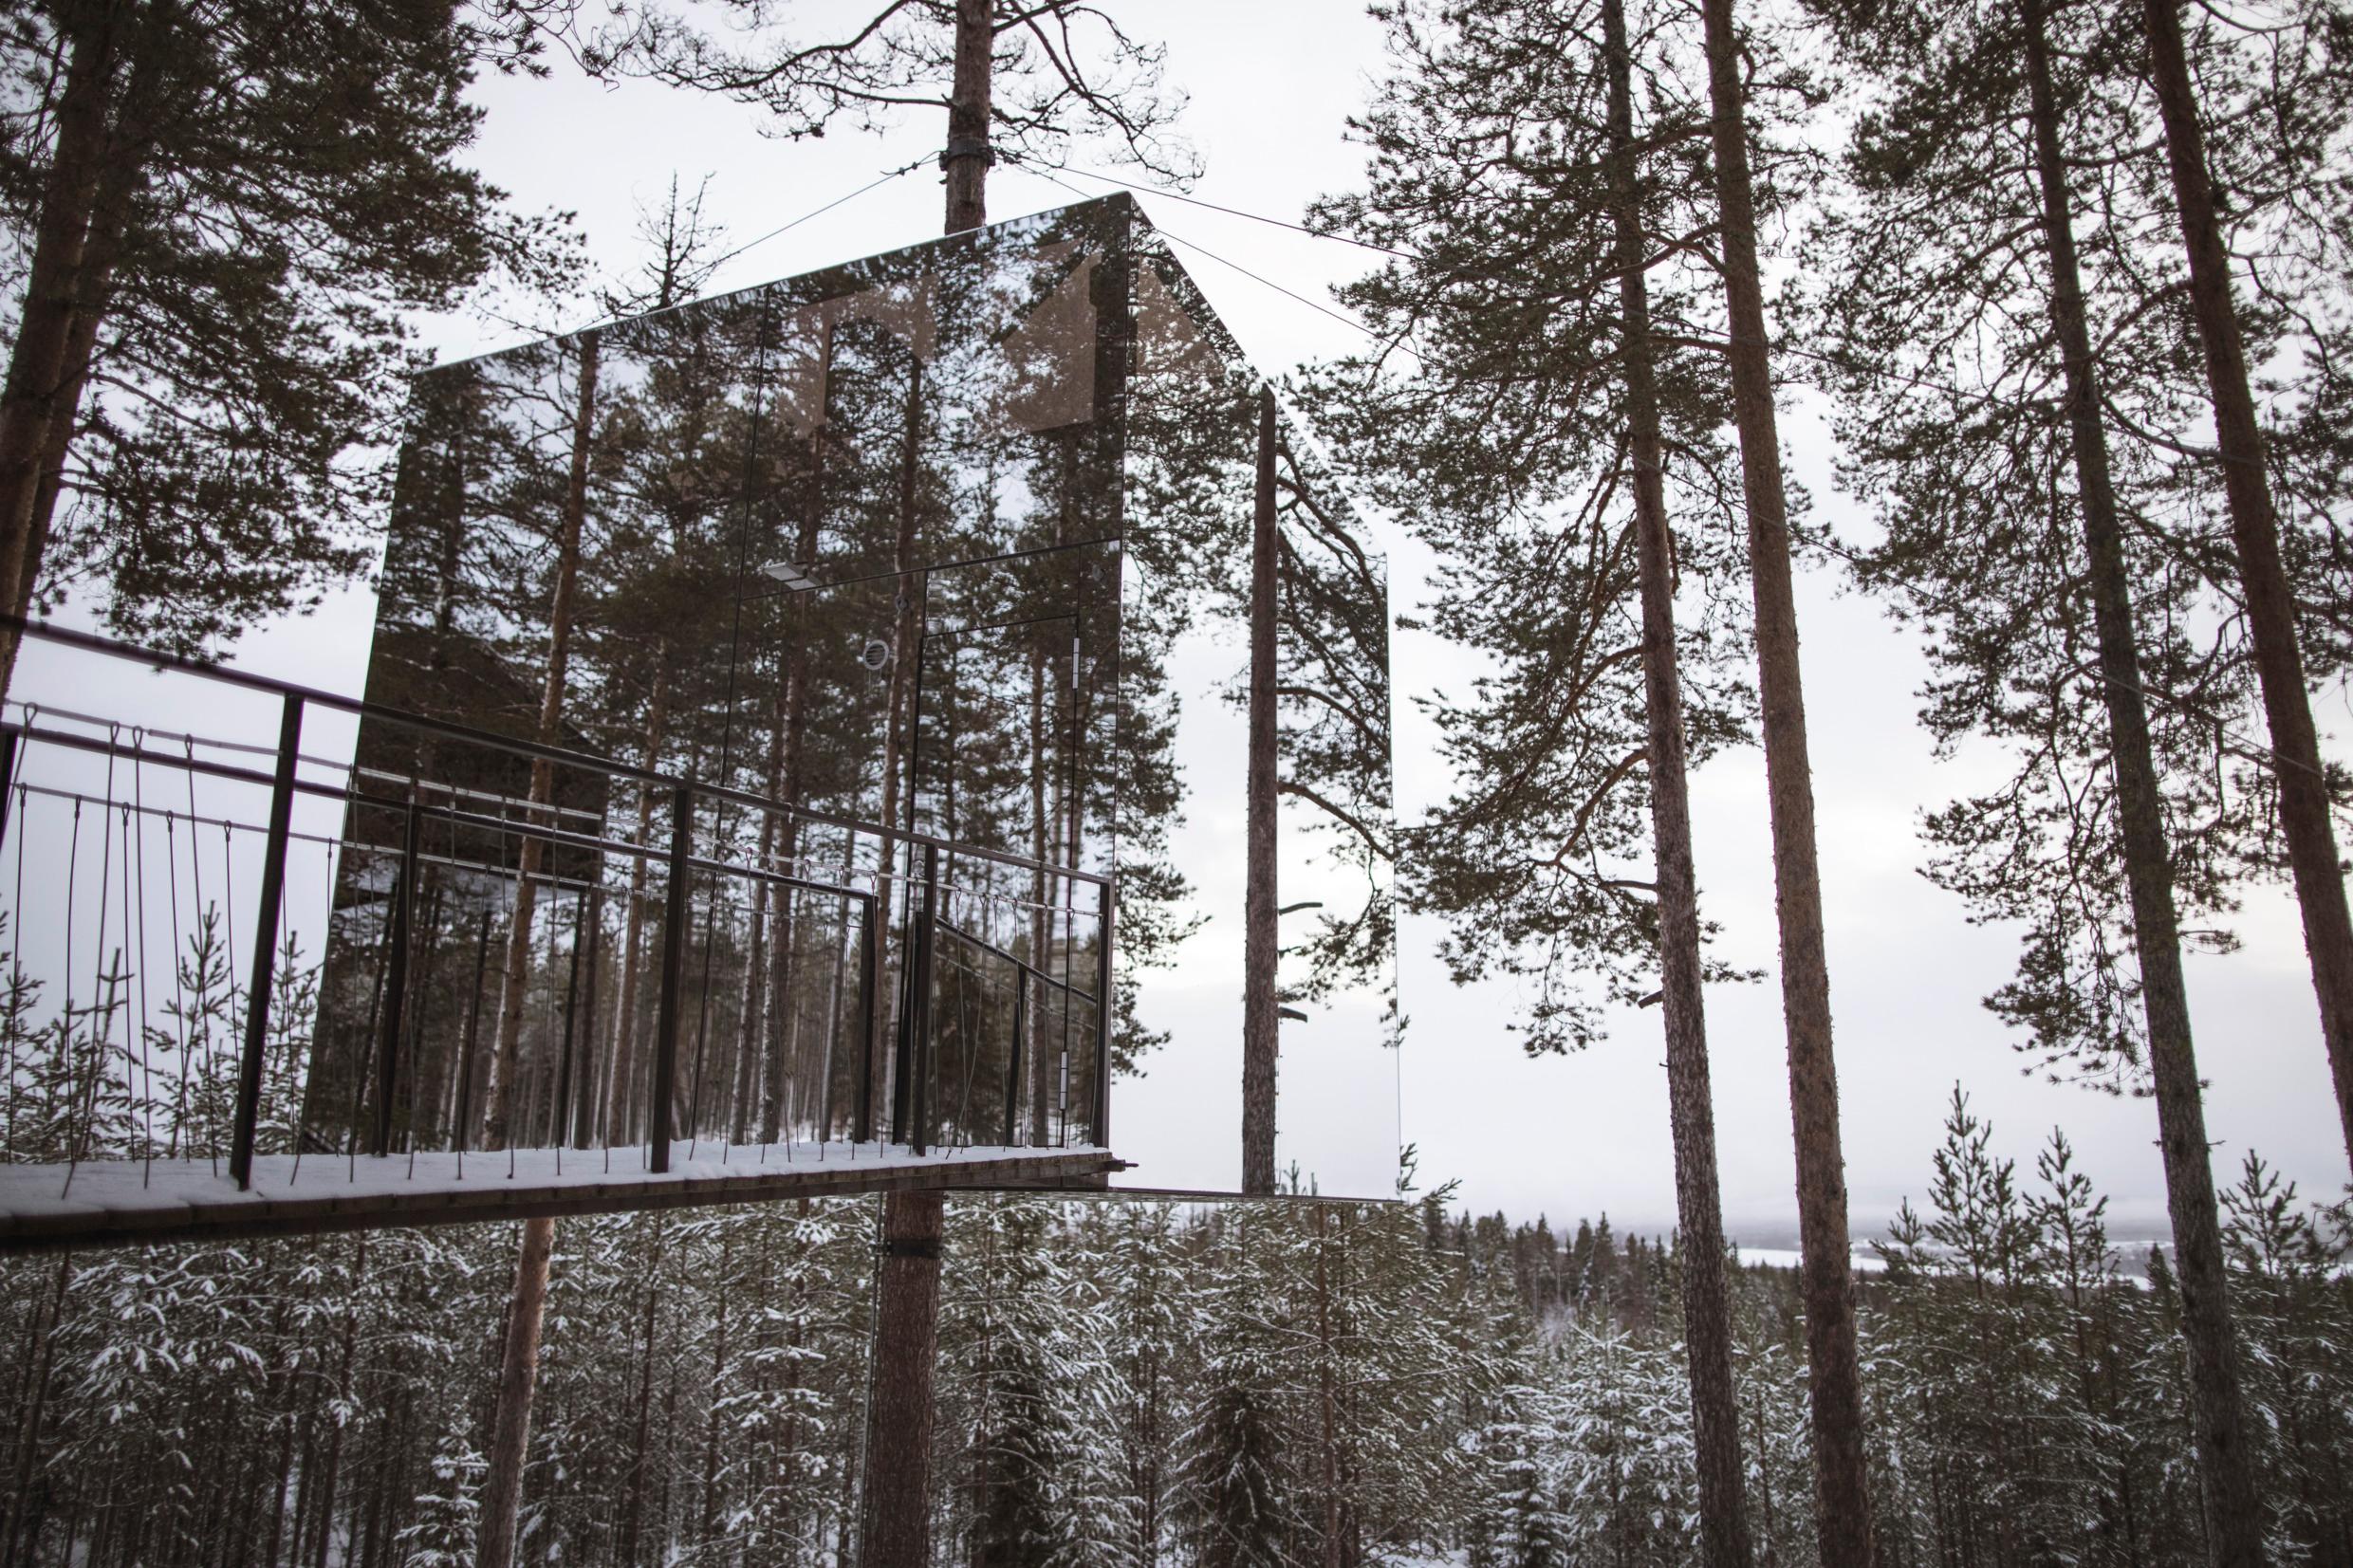 Дом на дереве из зеркального стекла, в заснеженном лесу в шведской Лапландии.